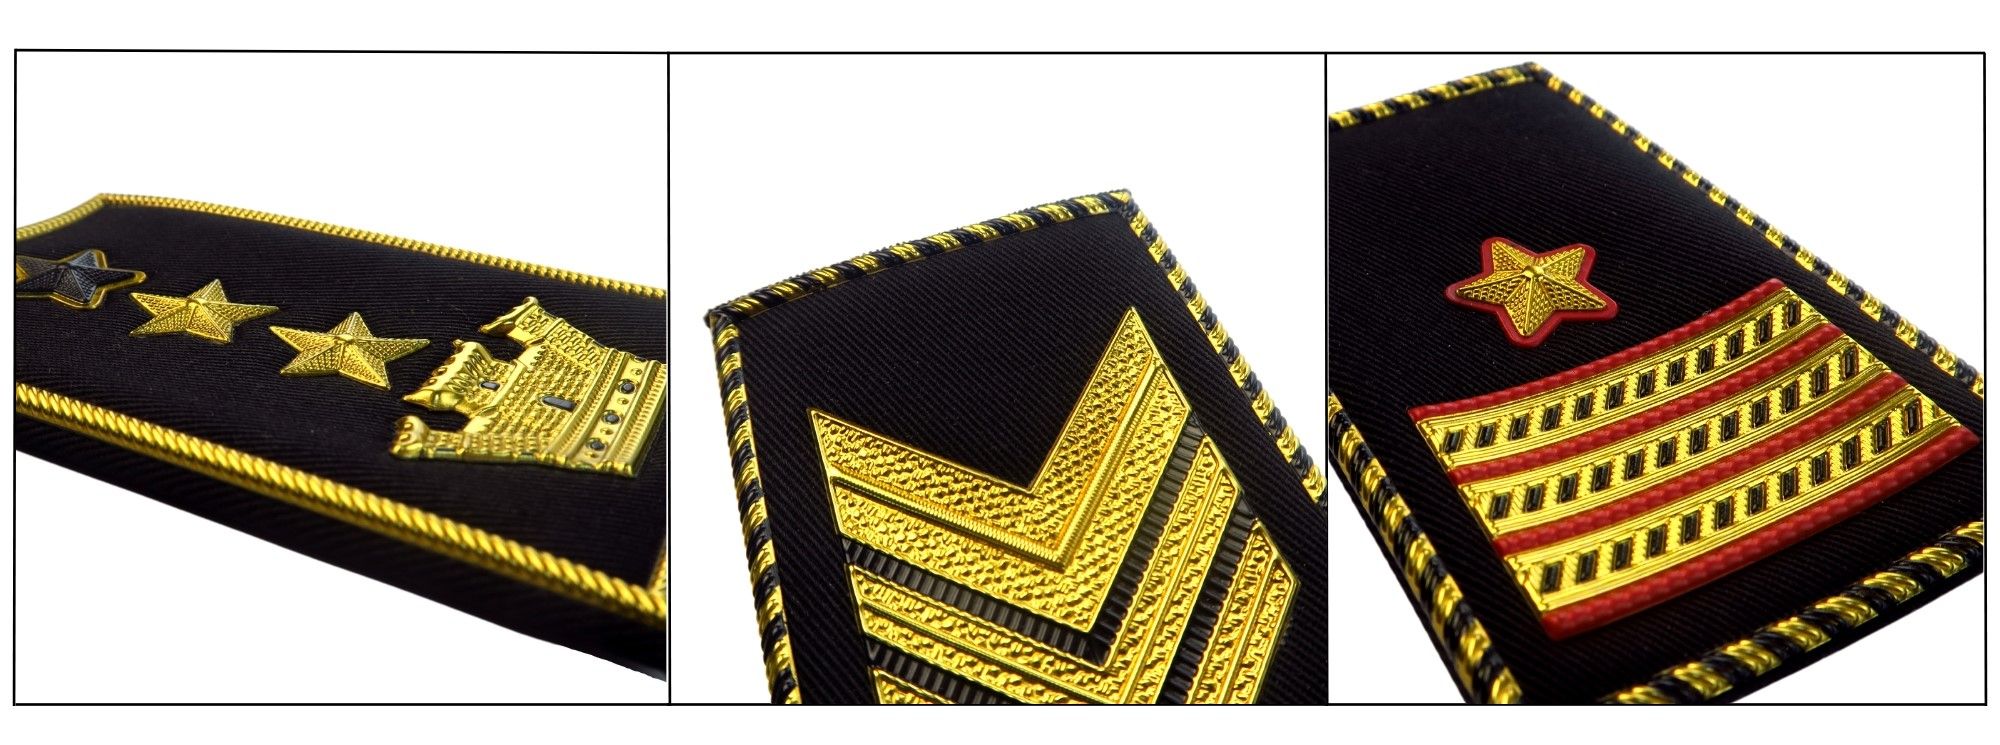 Лидерство символизировано, морское командование выполнено на заказ в эполетах капитана.